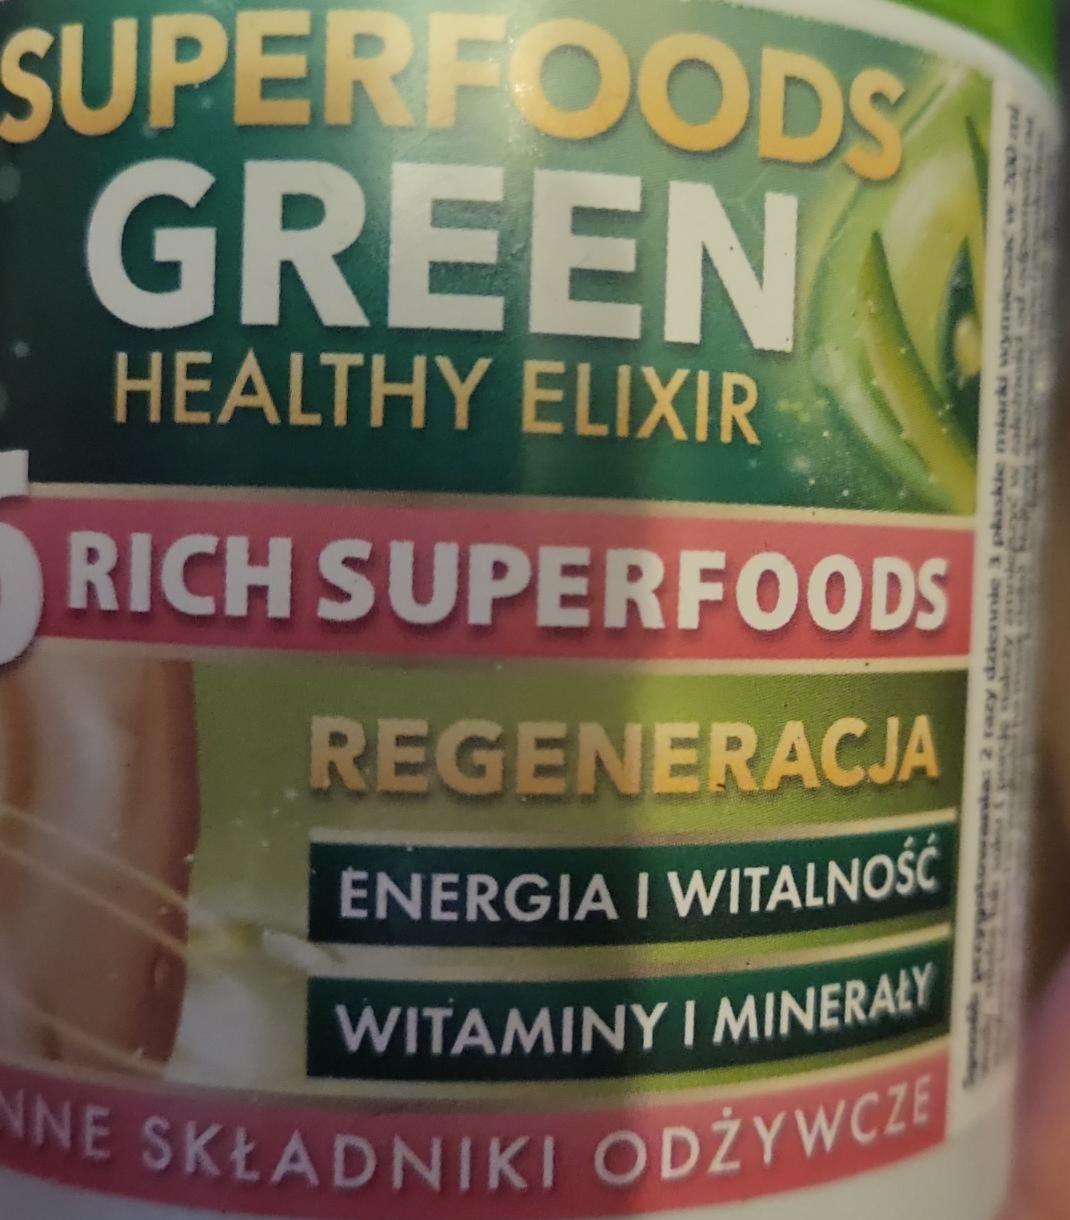 Zdjęcia - Green Healthy elixir Superfoods